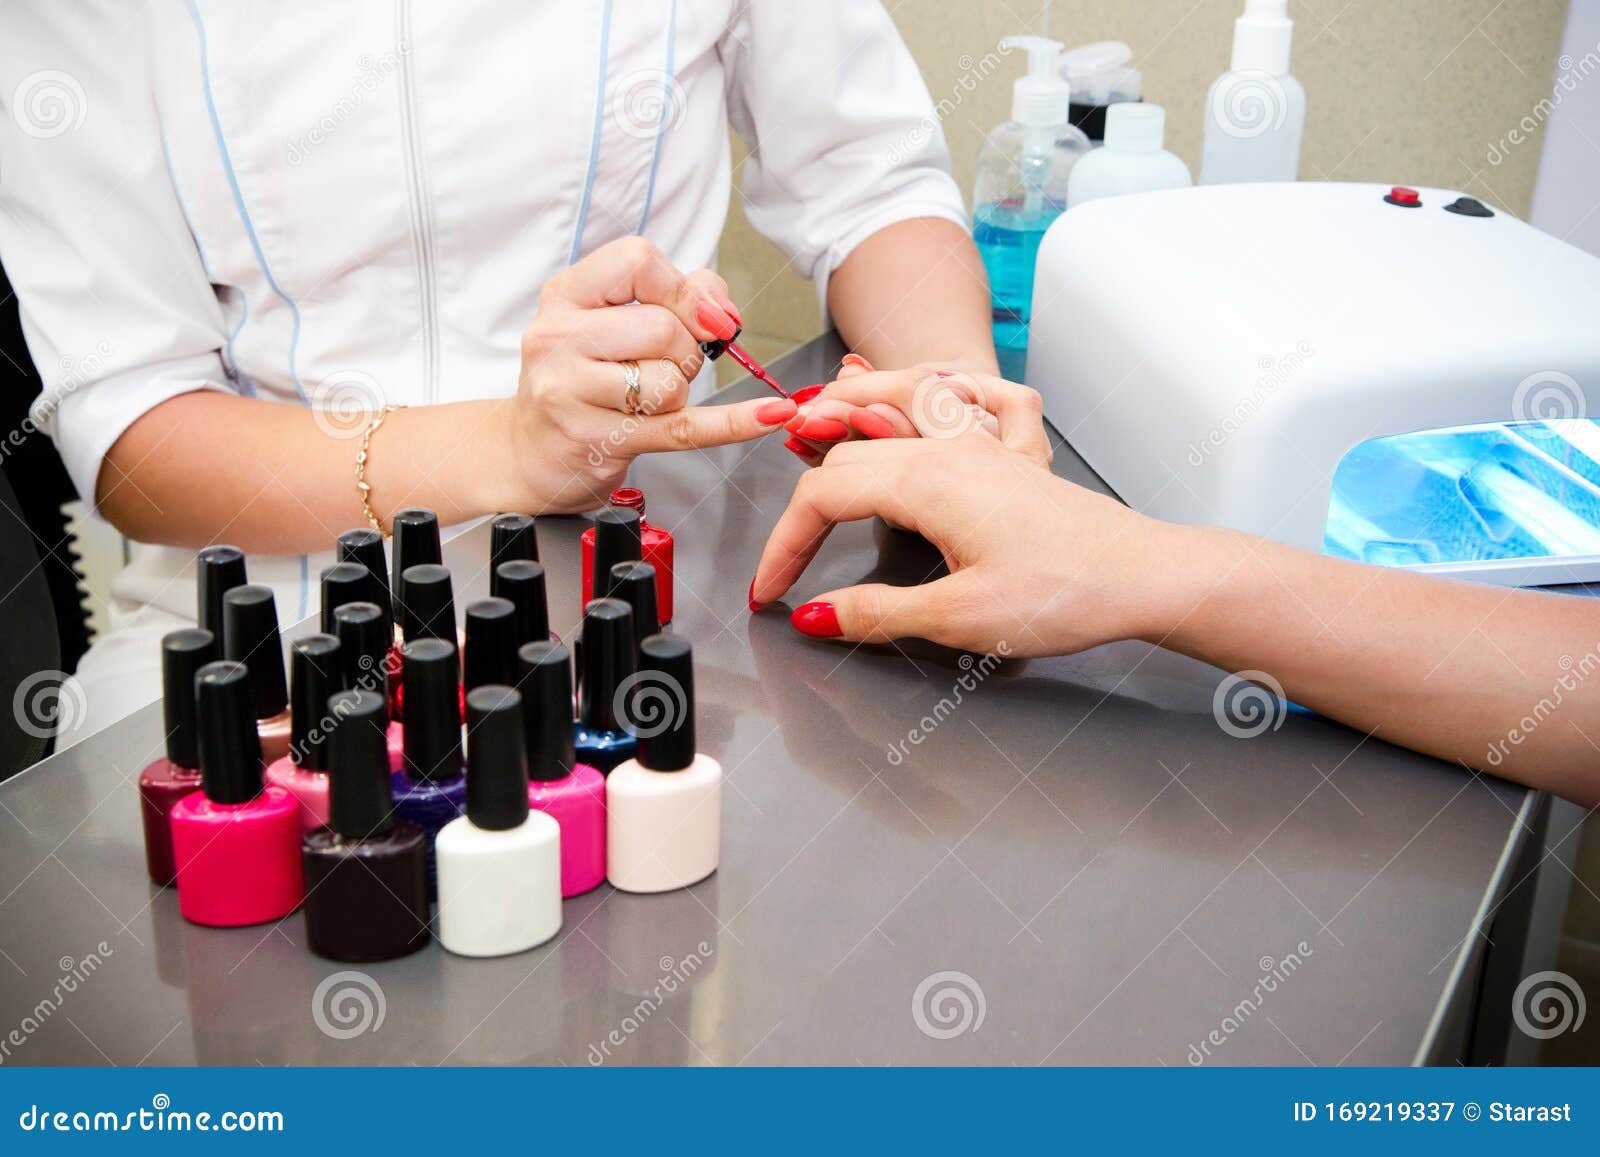 Nail Polish Color Testing Services in Ahmedabad,Gujarat, India